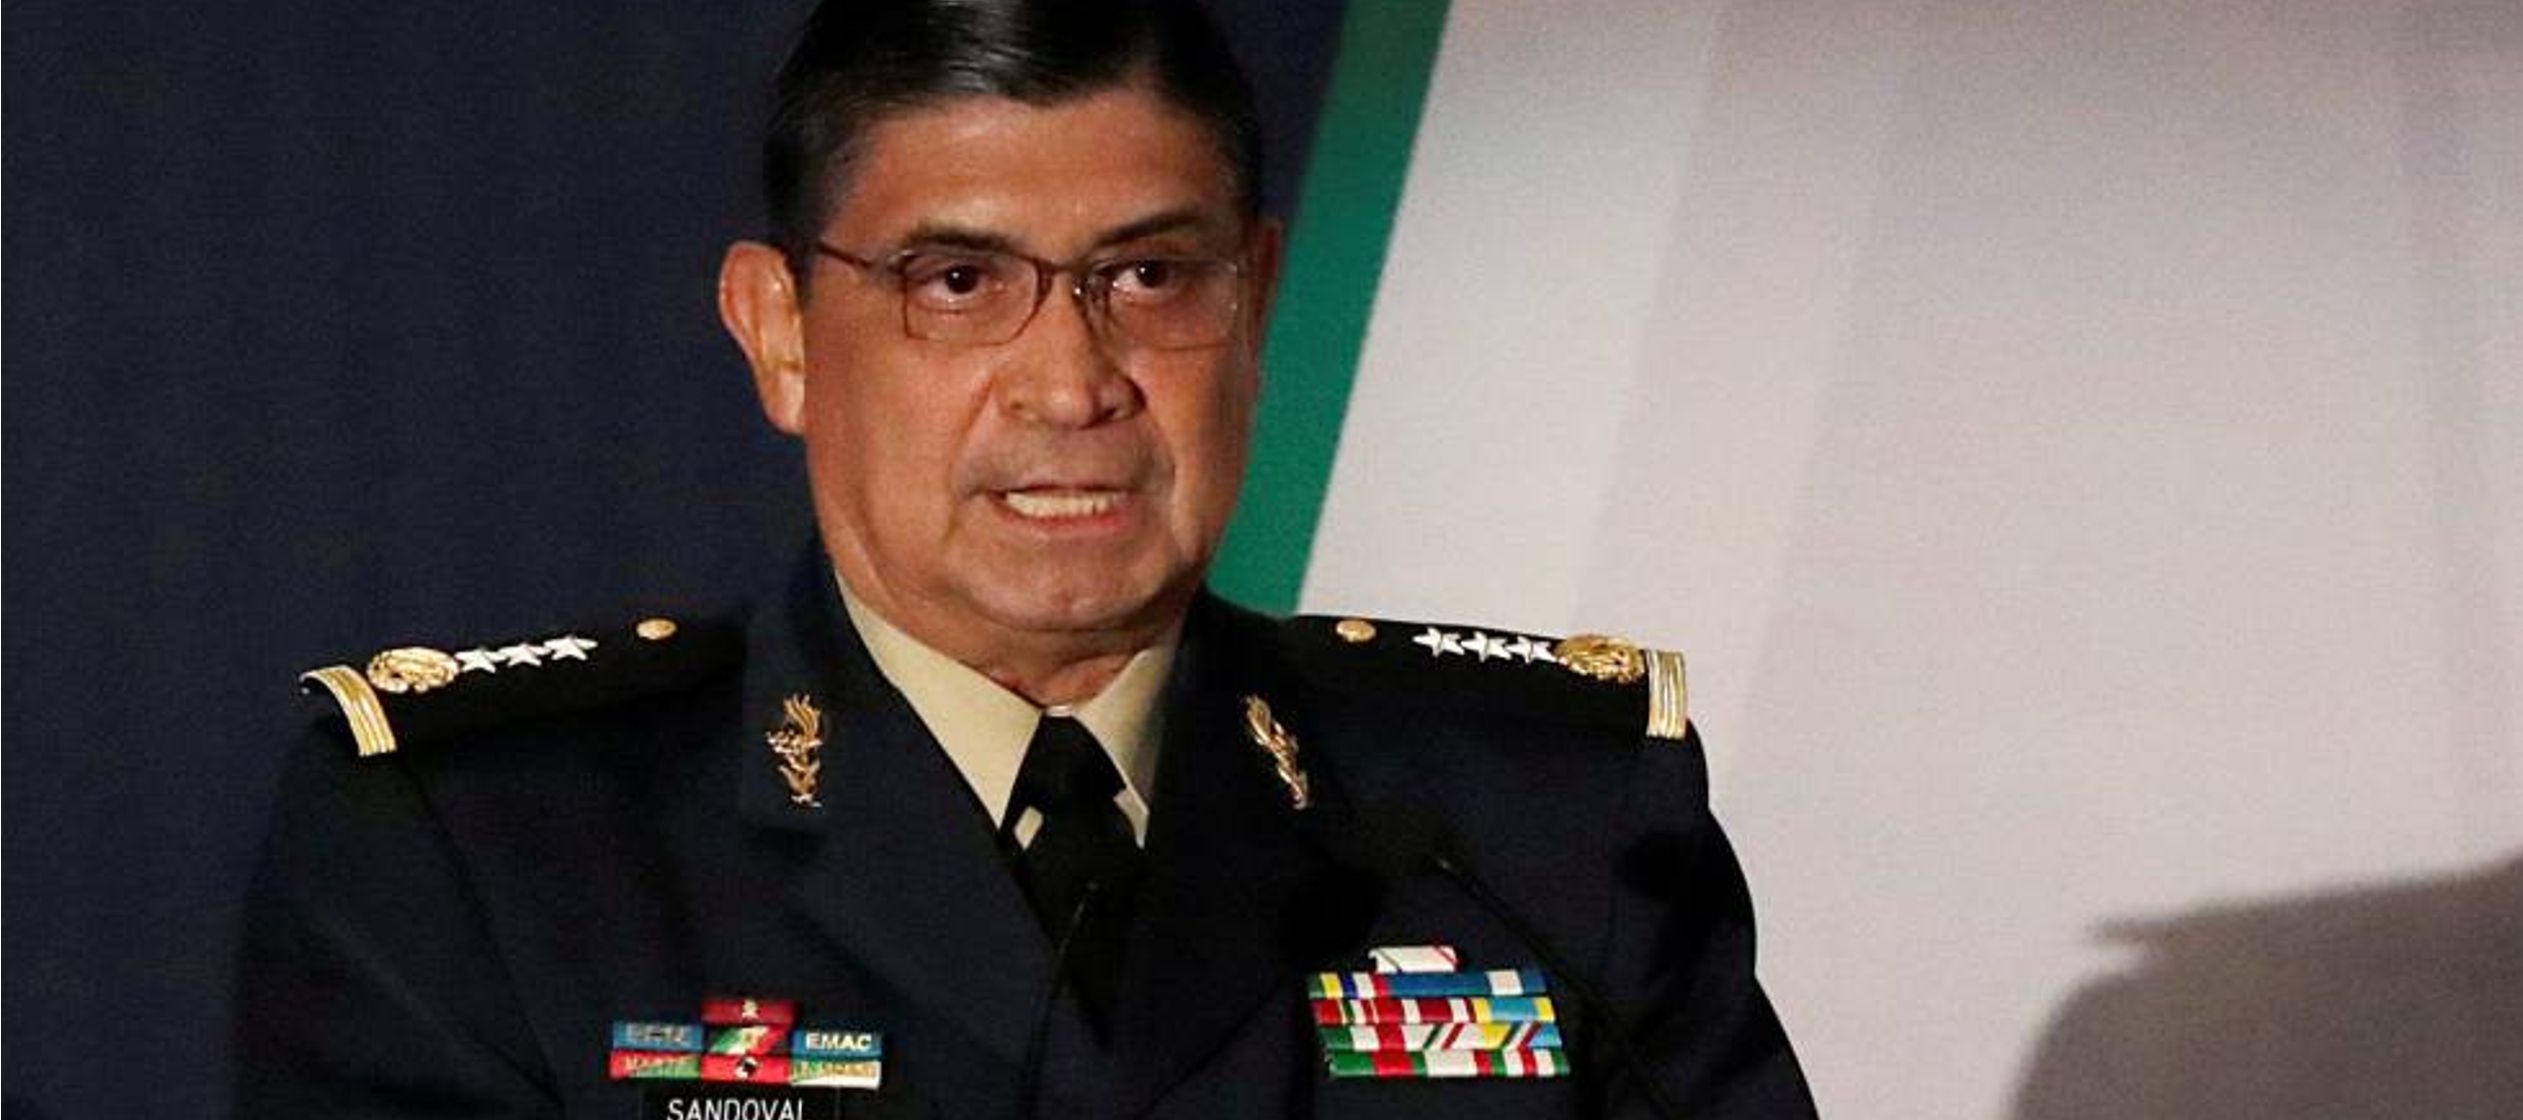 Luis Sandoval se convertirá en secretario de la Defensa el próximo 1 de diciembre,...